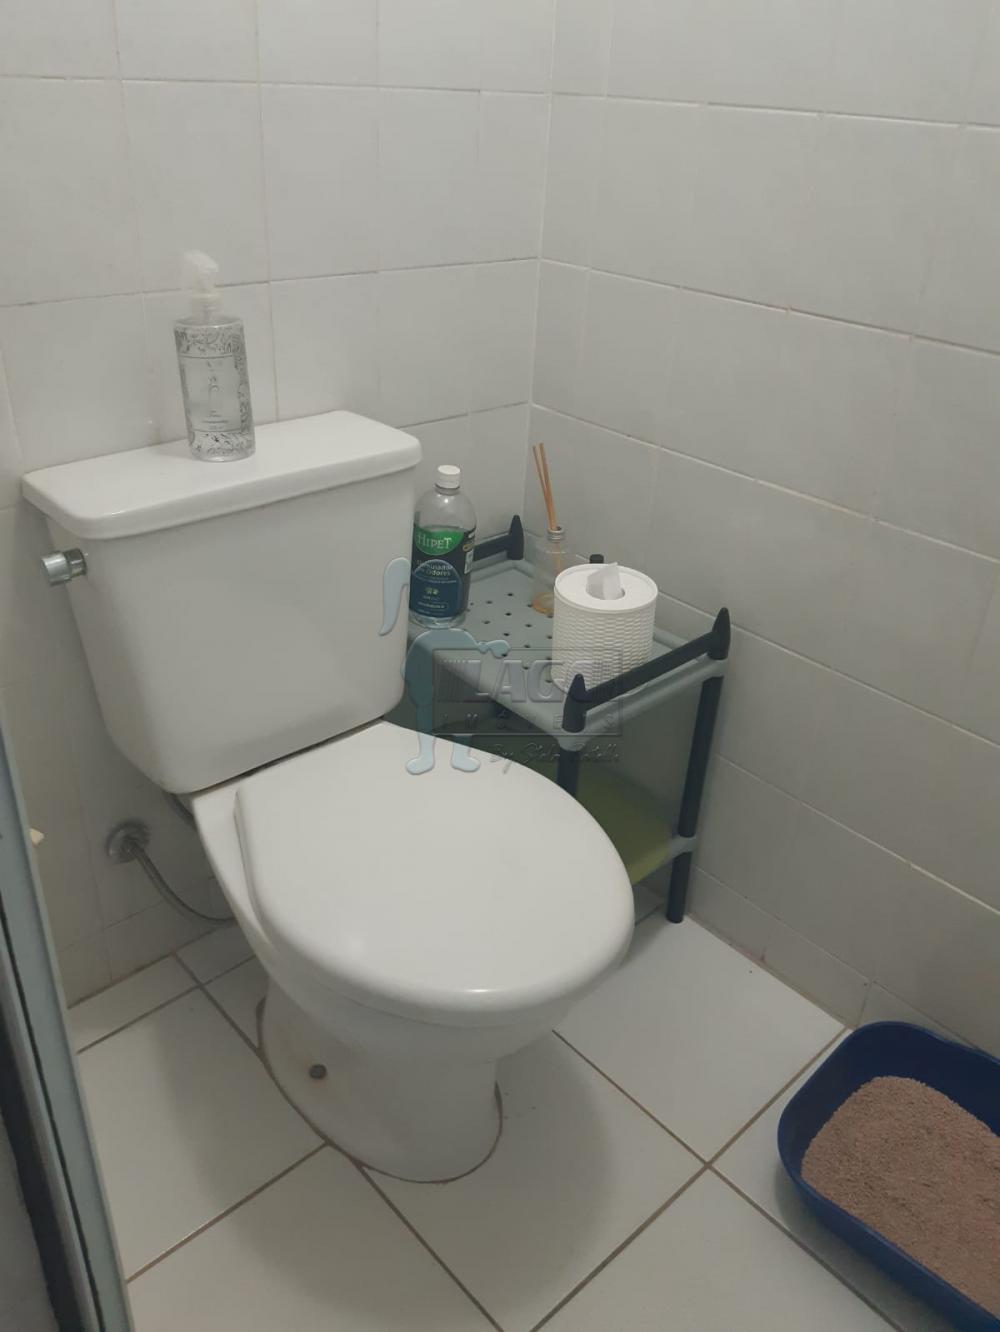 Comprar Apartamentos / Padrão em Ribeirão Preto R$ 280.000,00 - Foto 12